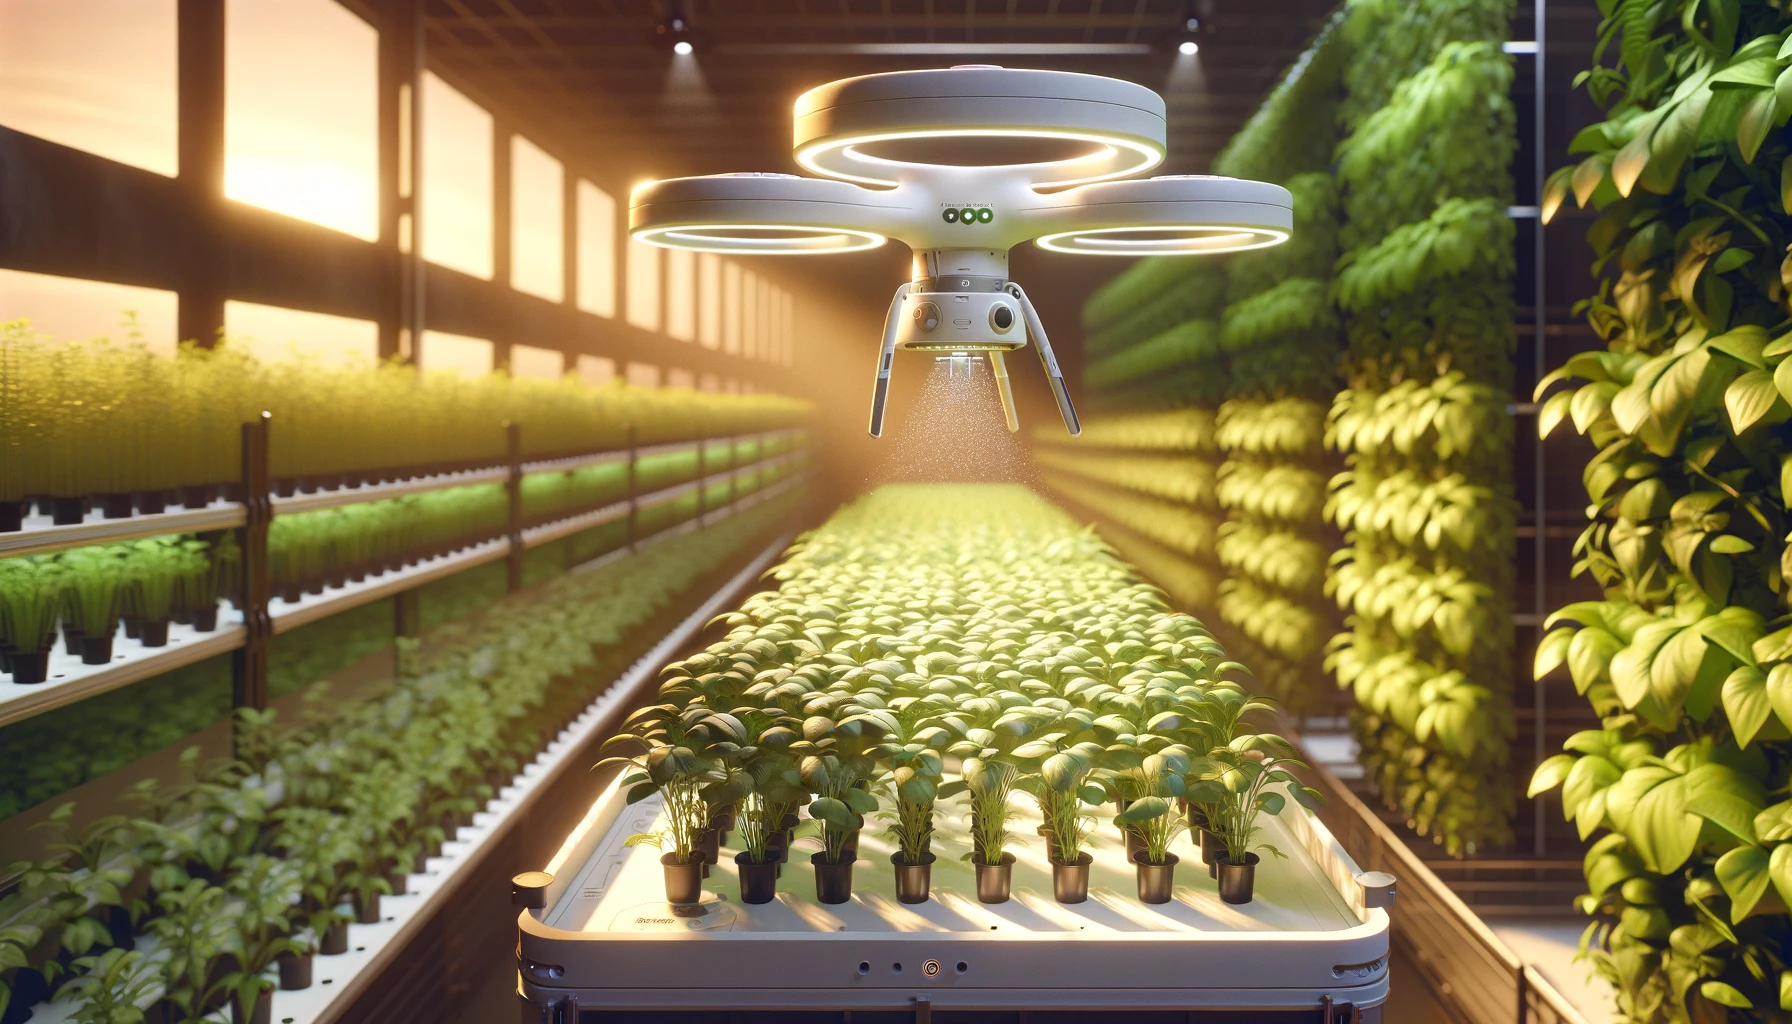 Futuristisk drönare som sköter om växter i ett vertikalt jordbruk, illustrerande AI:s roll i livsmedelsindustrin för att optimera odling och effektivisera resursanvändningen.